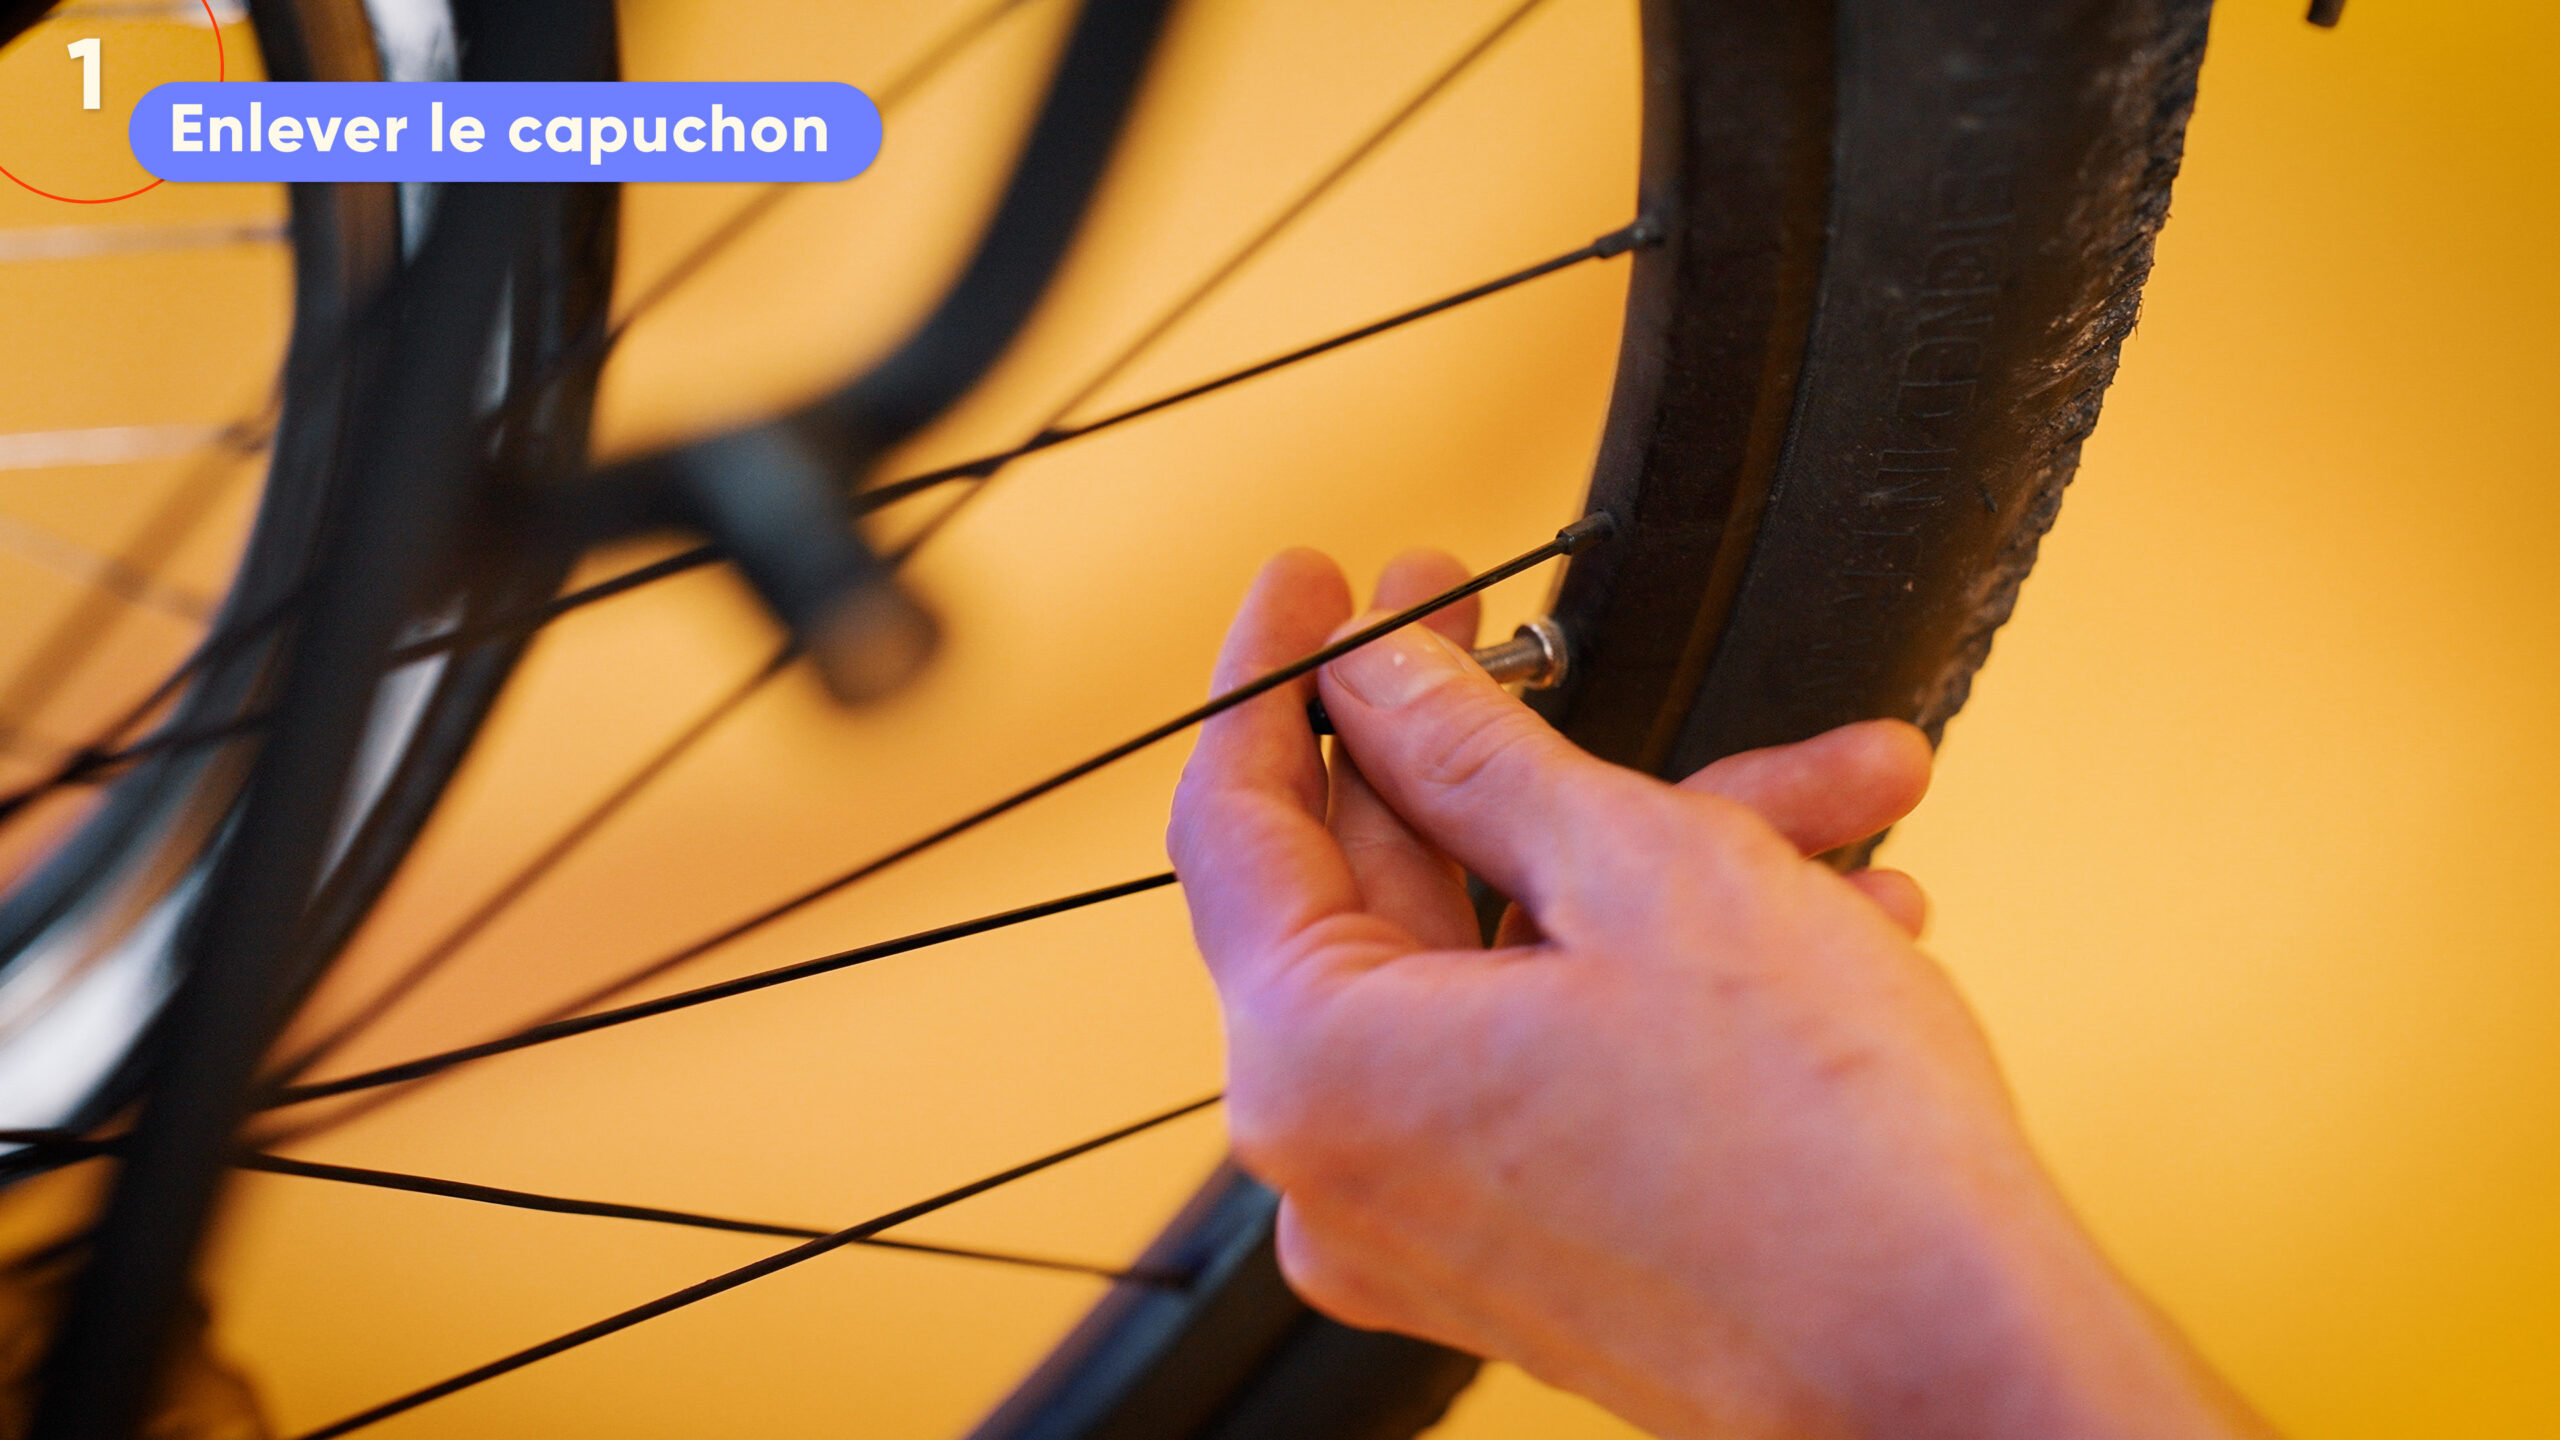 Voici comment gonfler ses pneus de voiture avec une pompe à vélo